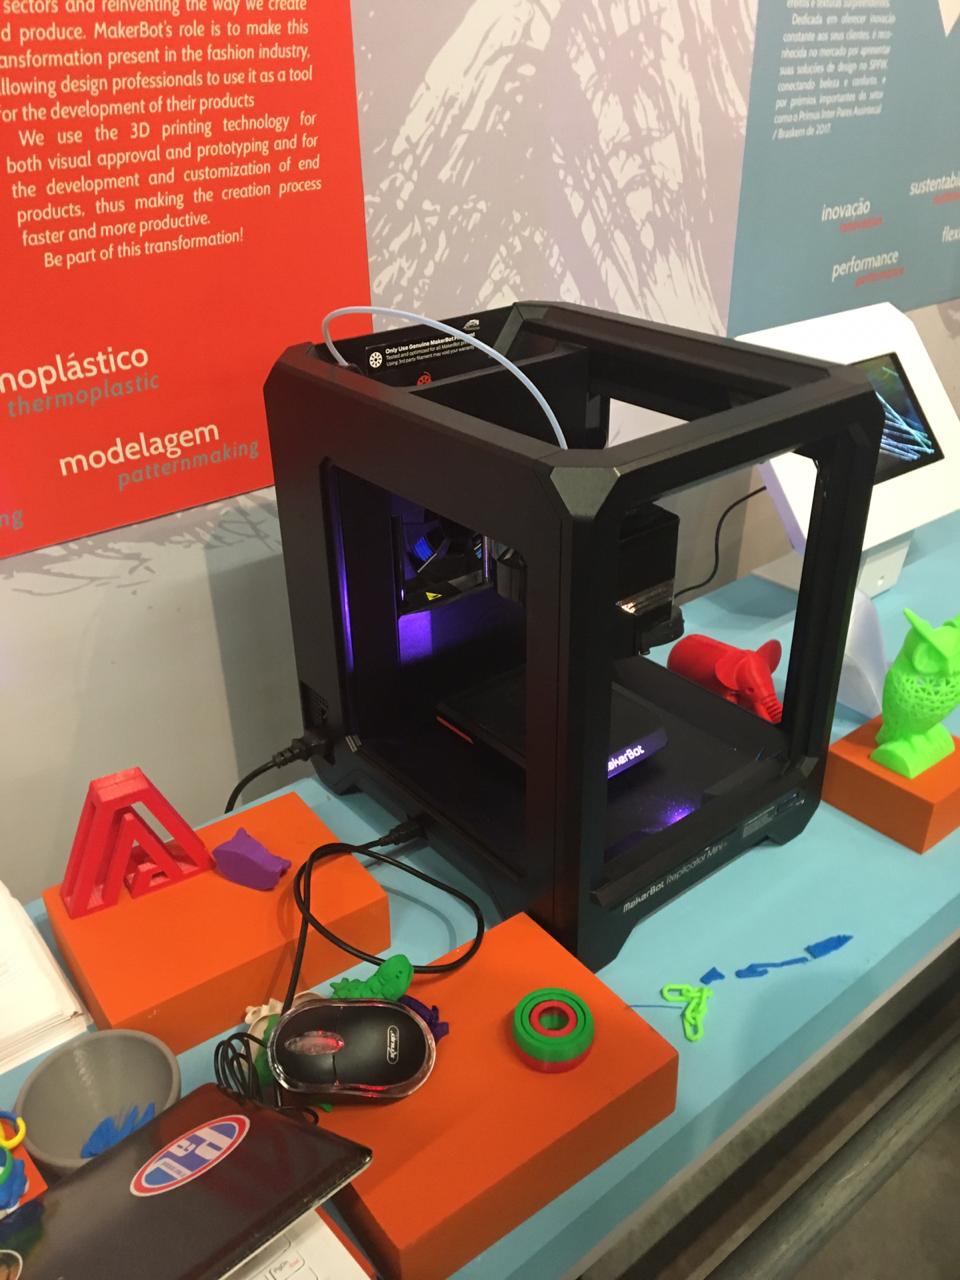 A Makerbot e a tecnologia de impressão 3D para prototipagem, desenvolvimento e personalização de produtos finais